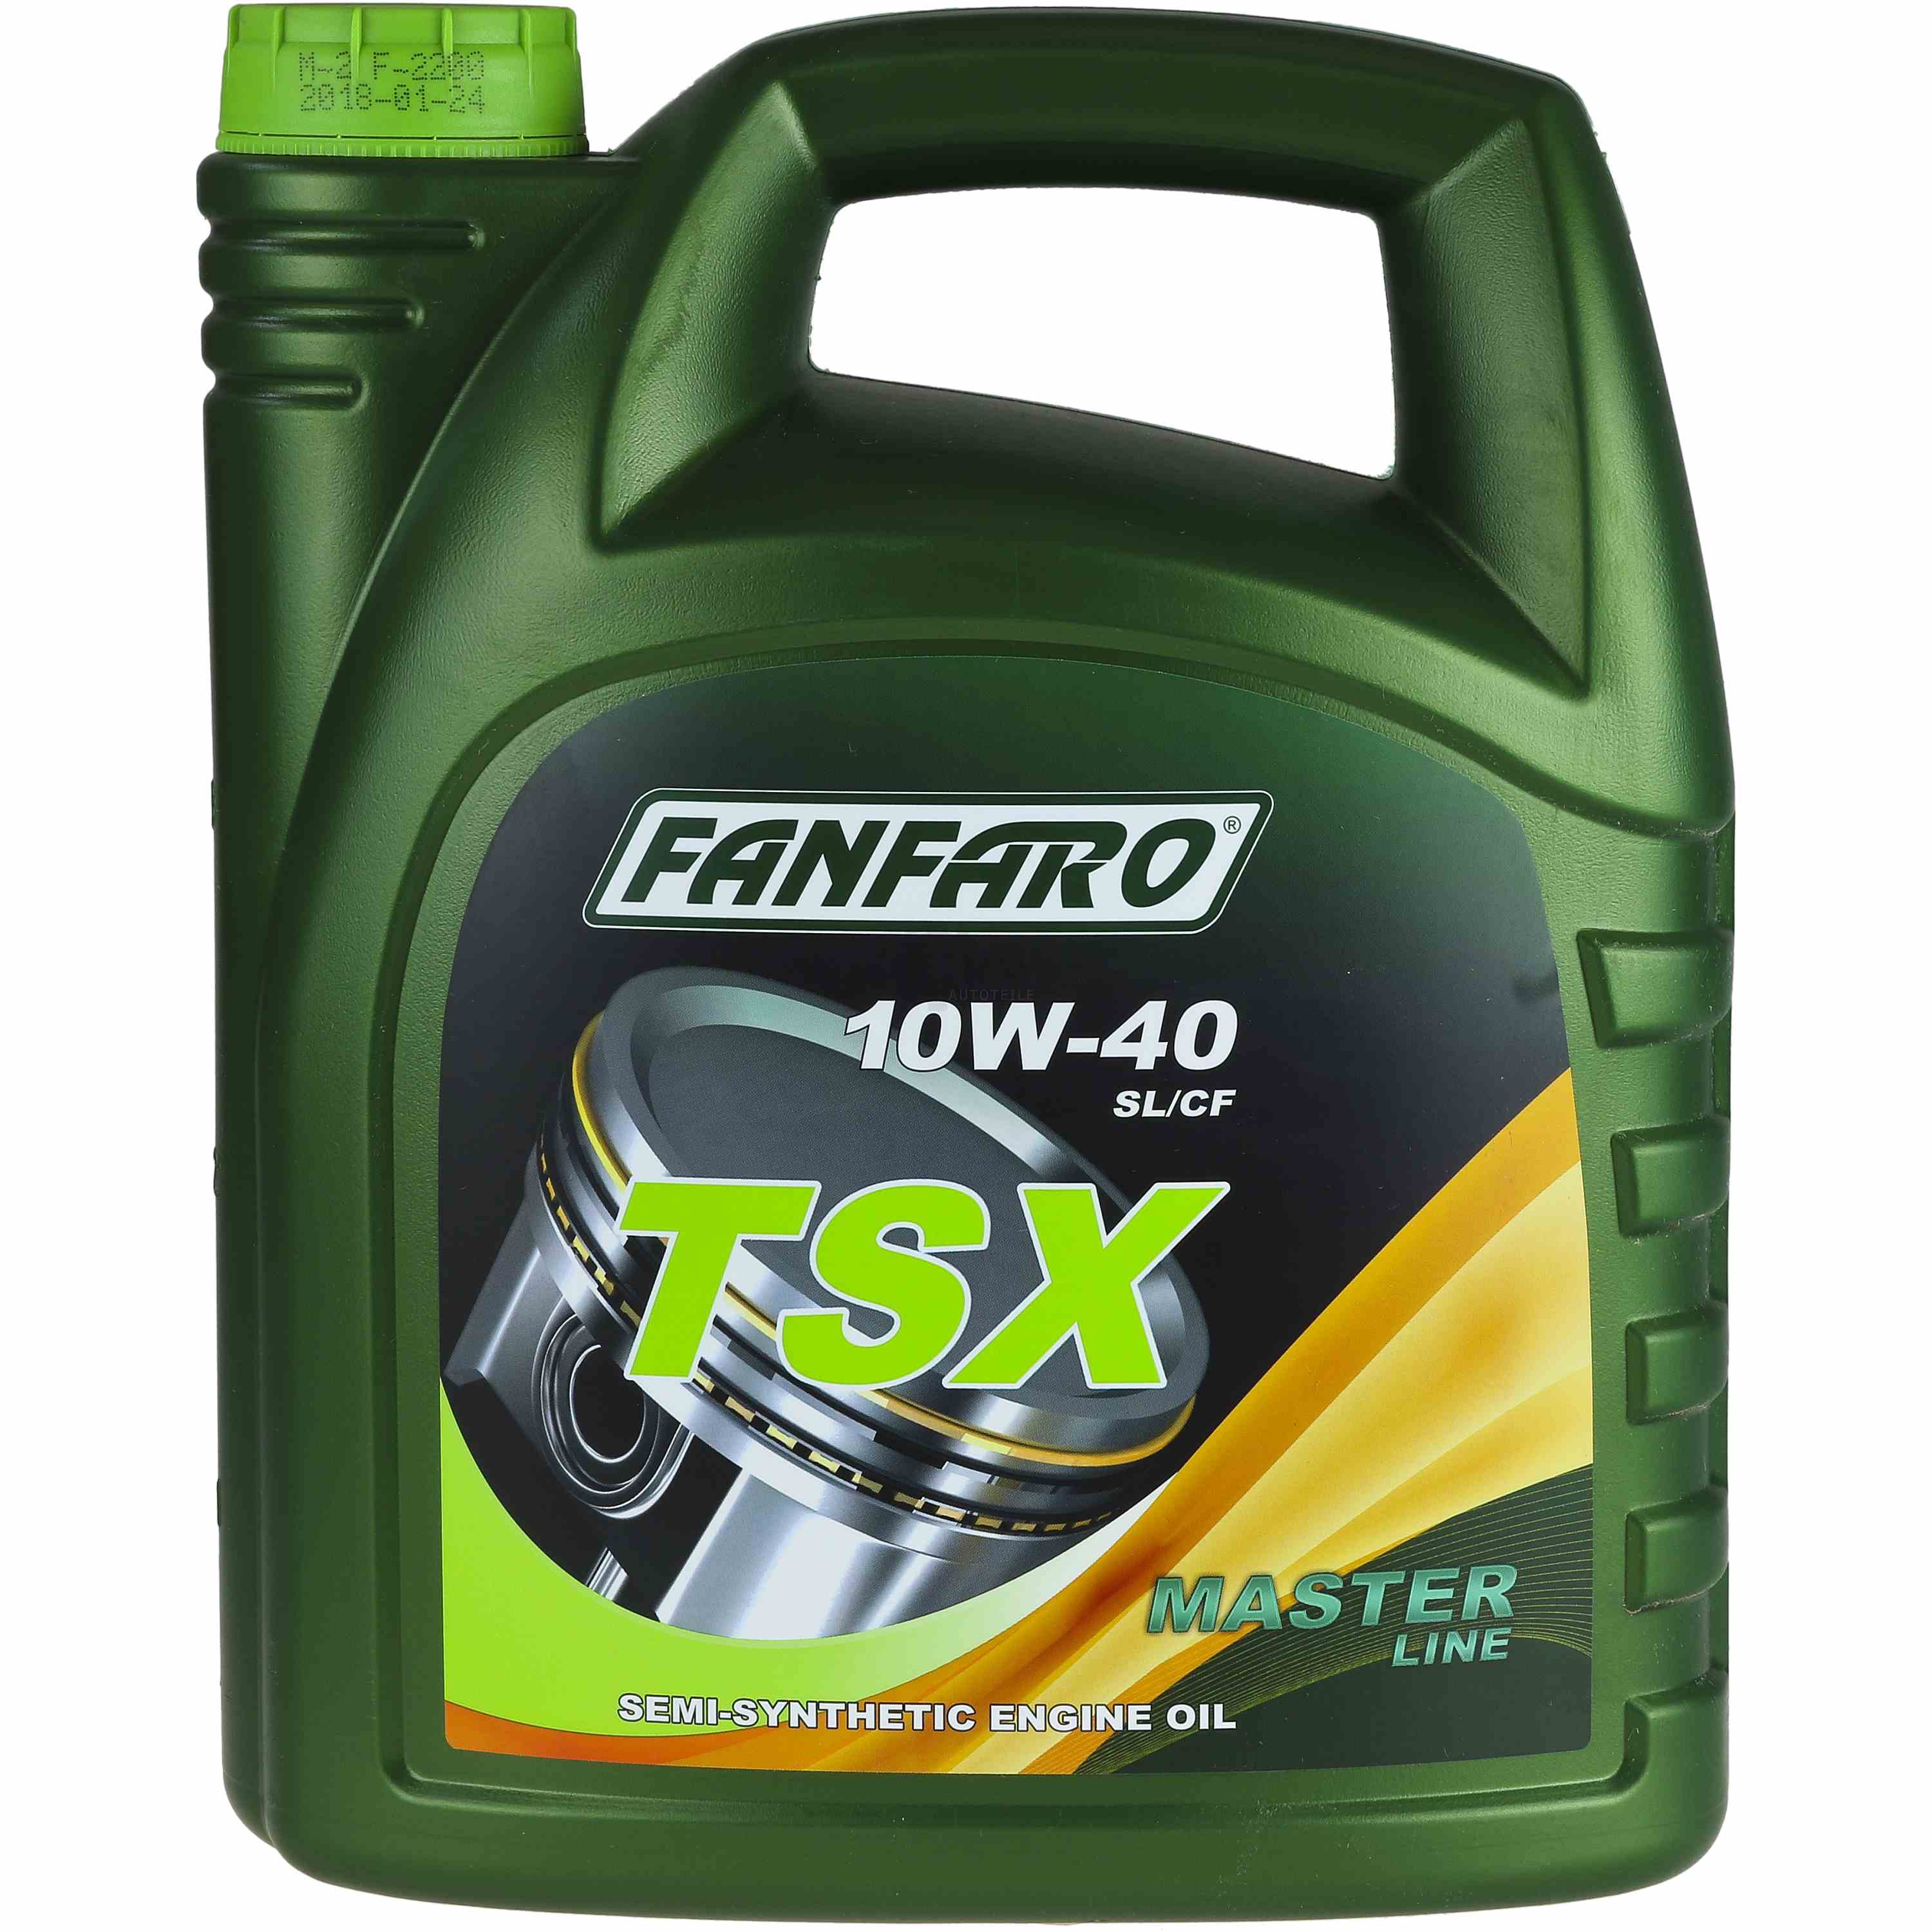 Масло api sn sm. Fanfaro TSX 10w-40. Fanfaro 5w40. Fanfaro VSX SAE 5w40 API SN/SM/CF 4л масло моторное. Fanfaro ff65025.